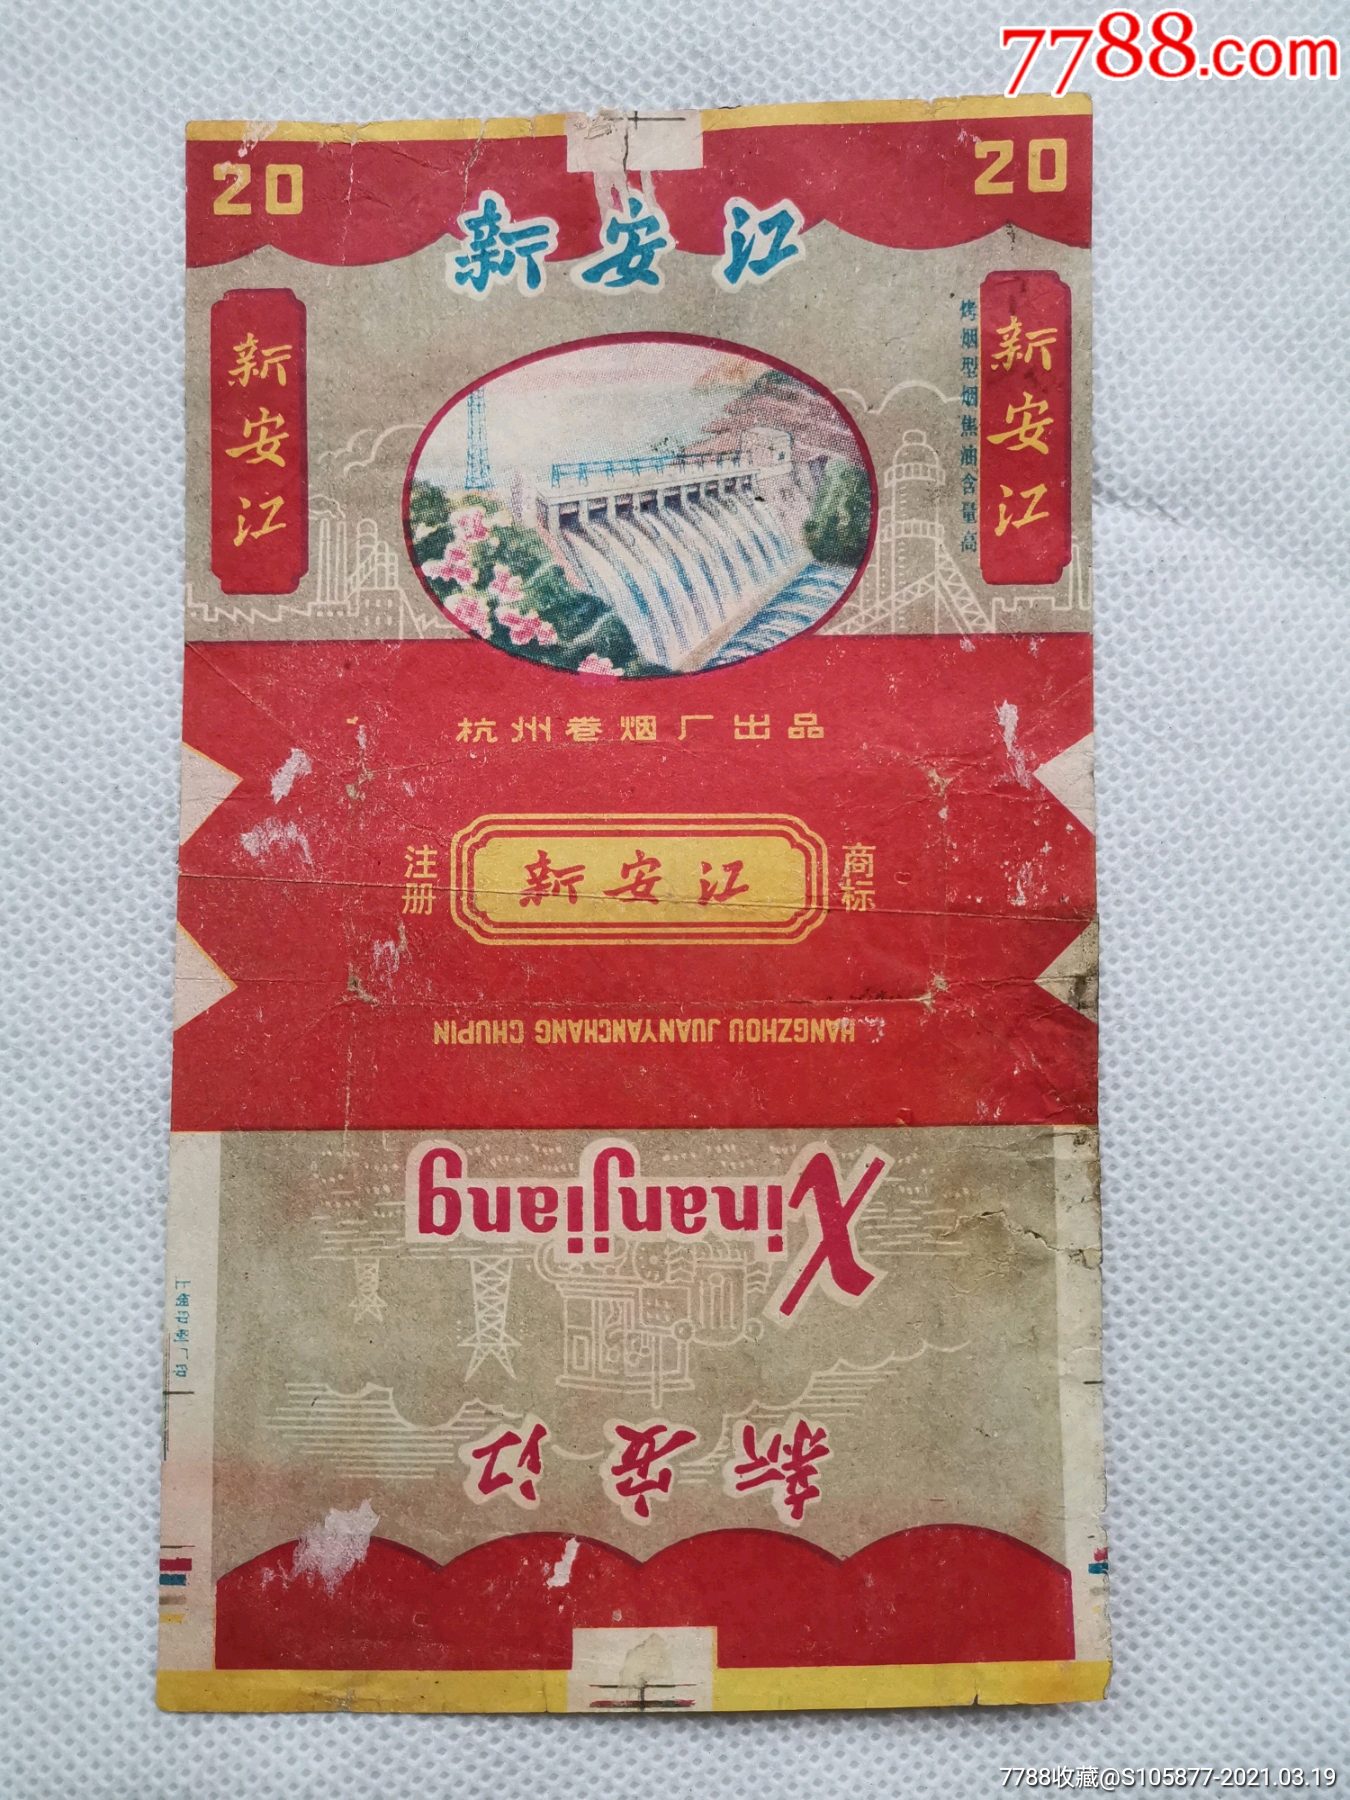 杭州卷烟厂出品的新安江香烟烟标一张